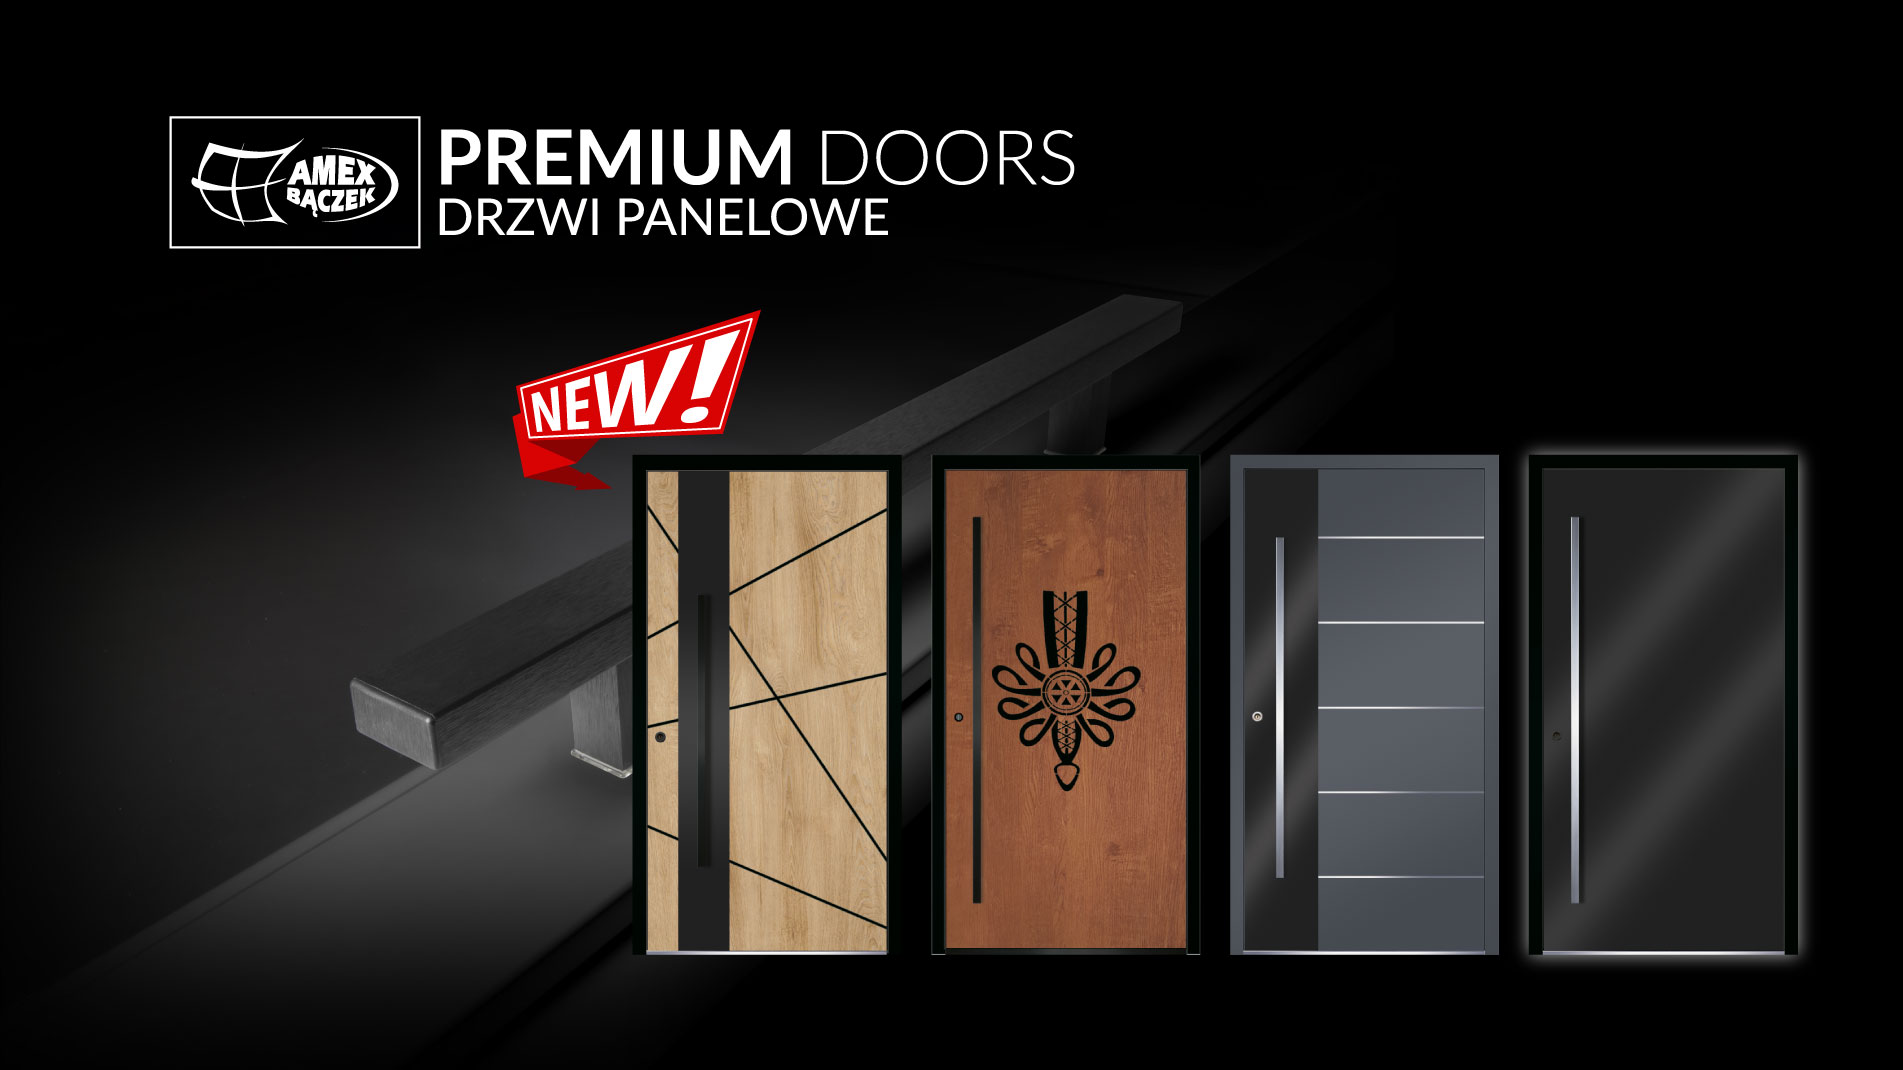 Drzwi panelowe premium doors